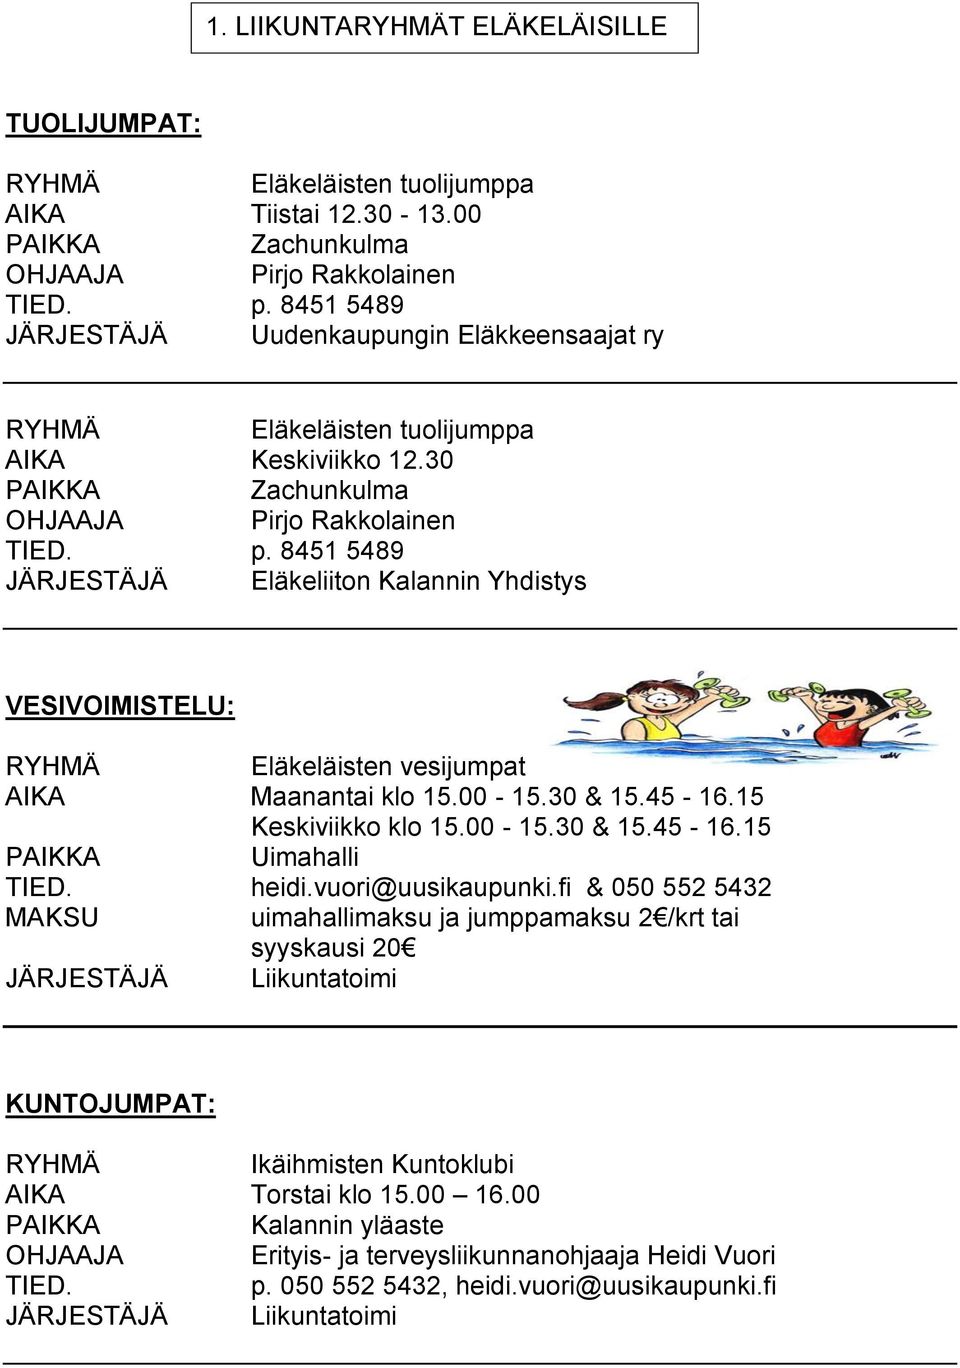 8451 5489 JÄRJESTÄJÄ Eläkeliiton Kalannin Yhdistys VESIVOIMISTELU: Eläkeläisten vesijumpat AIKA Maanantai klo 15.00-15.30 & 15.45-16.15 Keskiviikko klo 15.00-15.30 & 15.45-16.15 Uimahalli heidi.